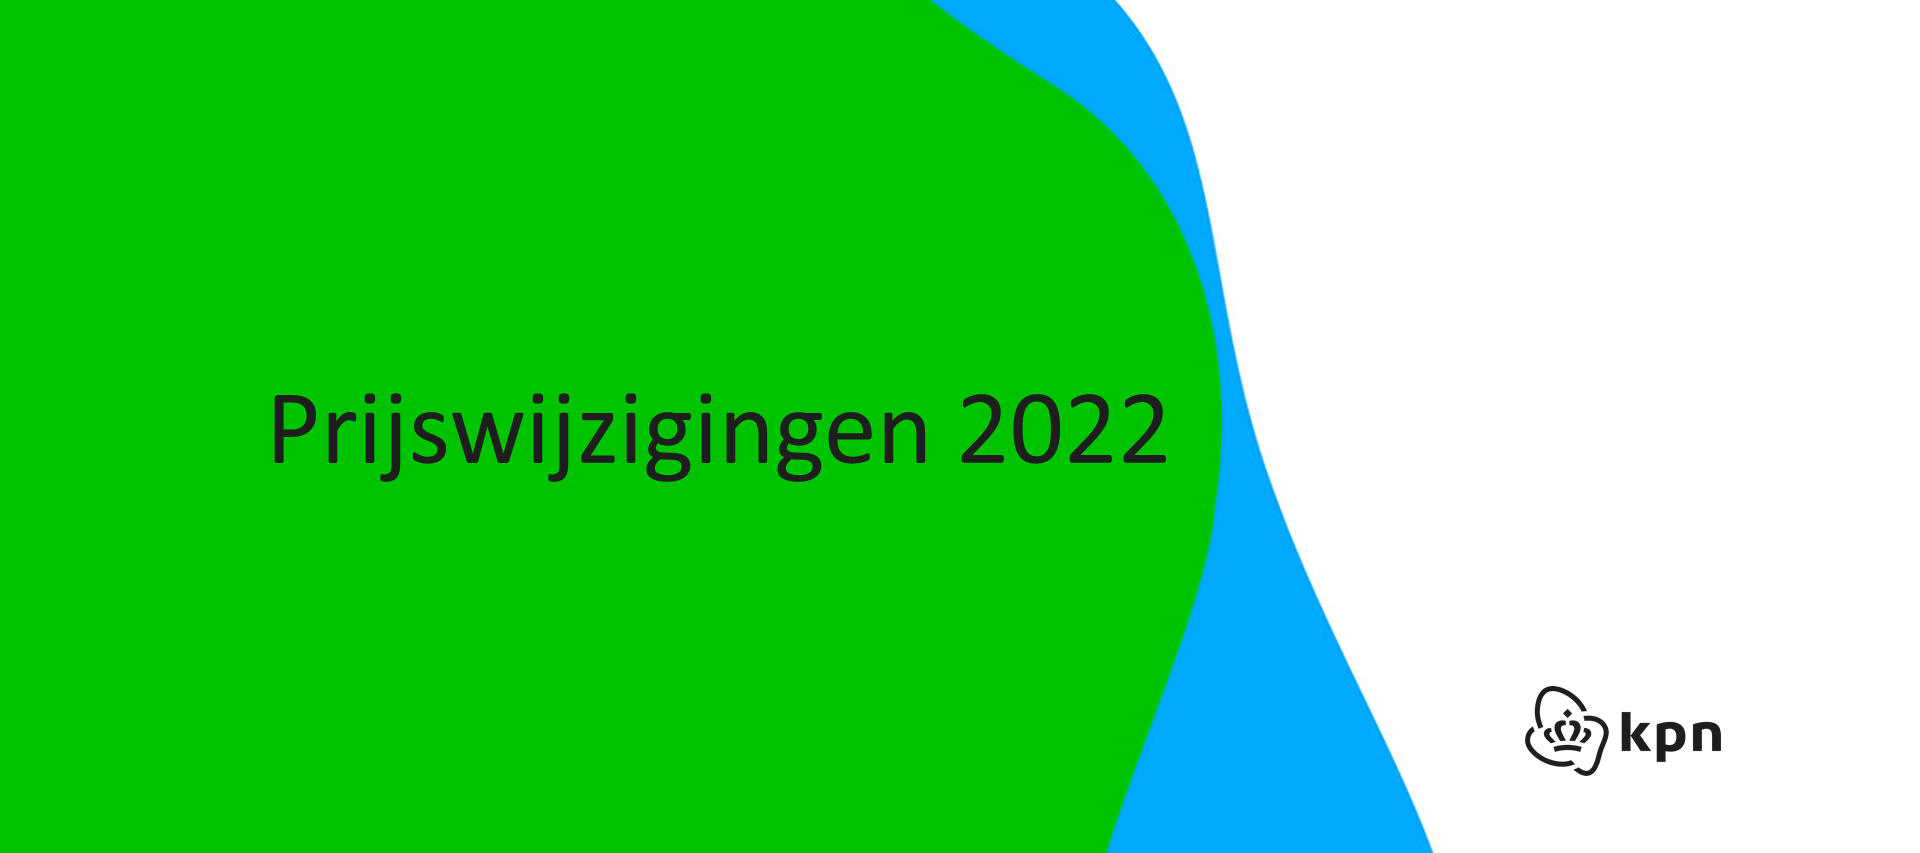 Prijswijzigingen KPN & XS4ALL 2022